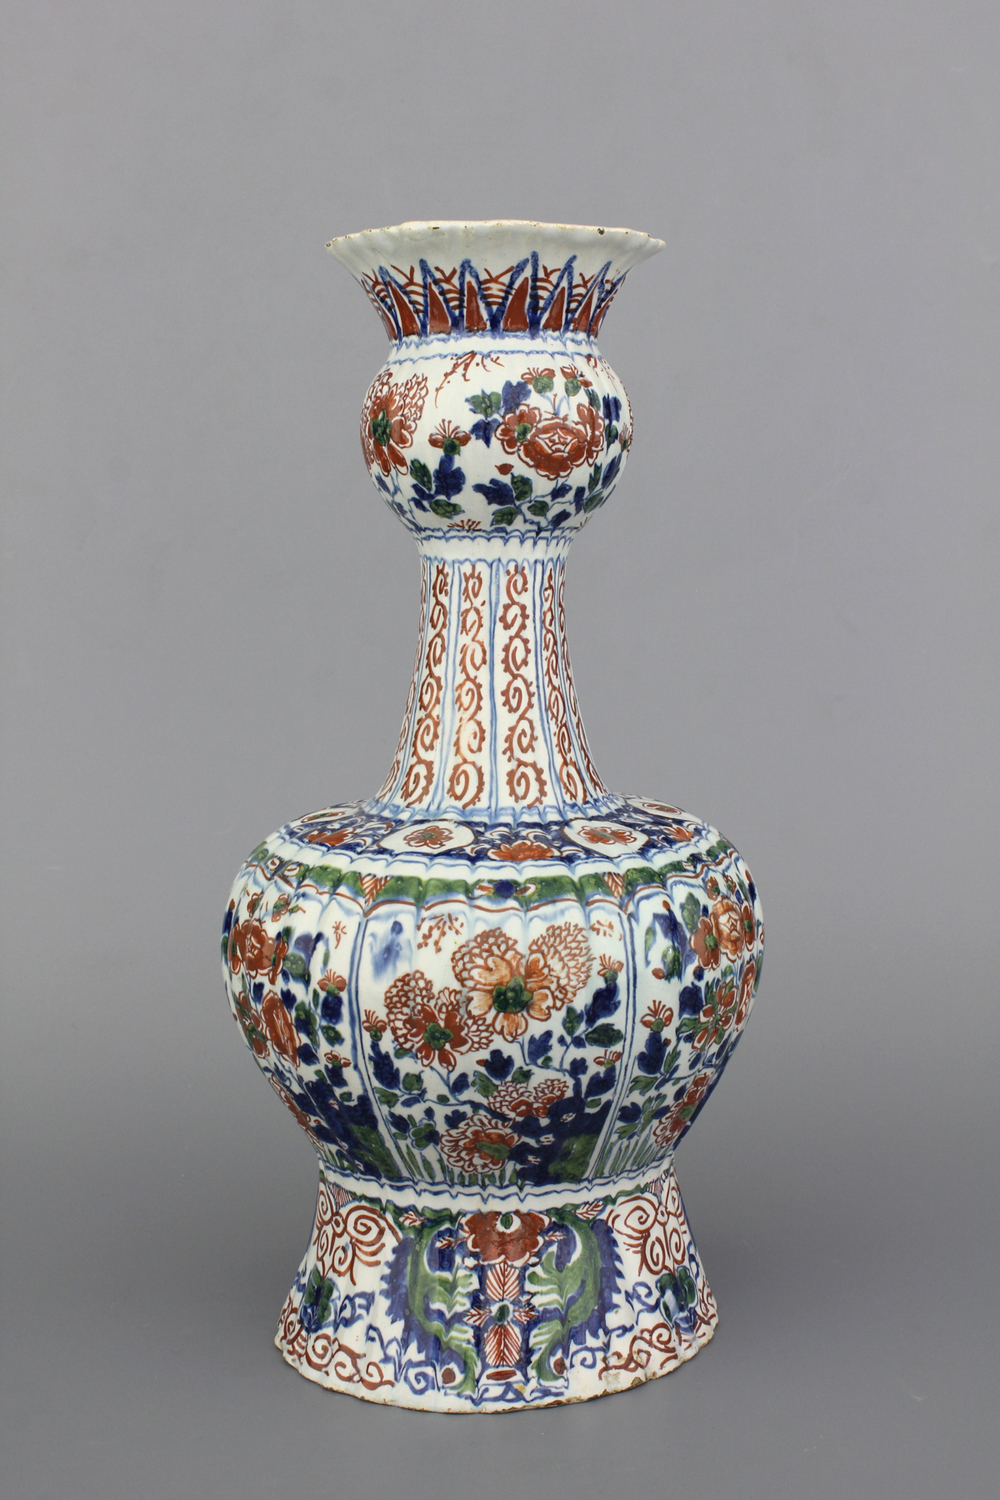 A ribbed Dutch Delft cashmere palette bottle vase, ca. 1700